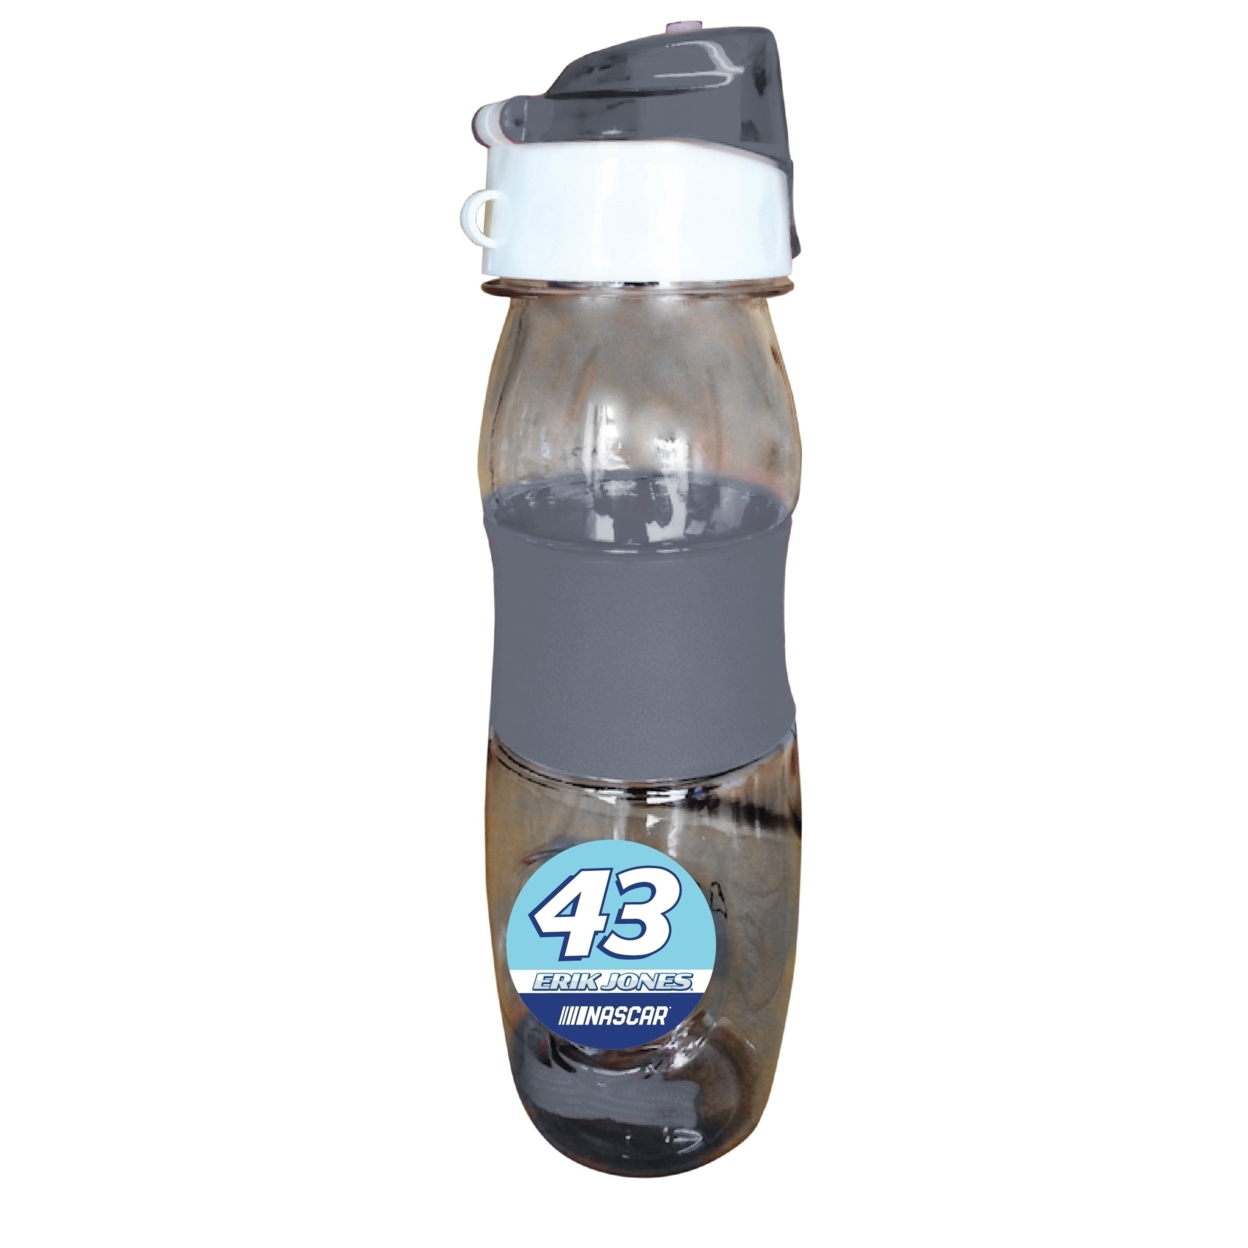 Erik Jones NASCAR #43 Plastic Water Bottle